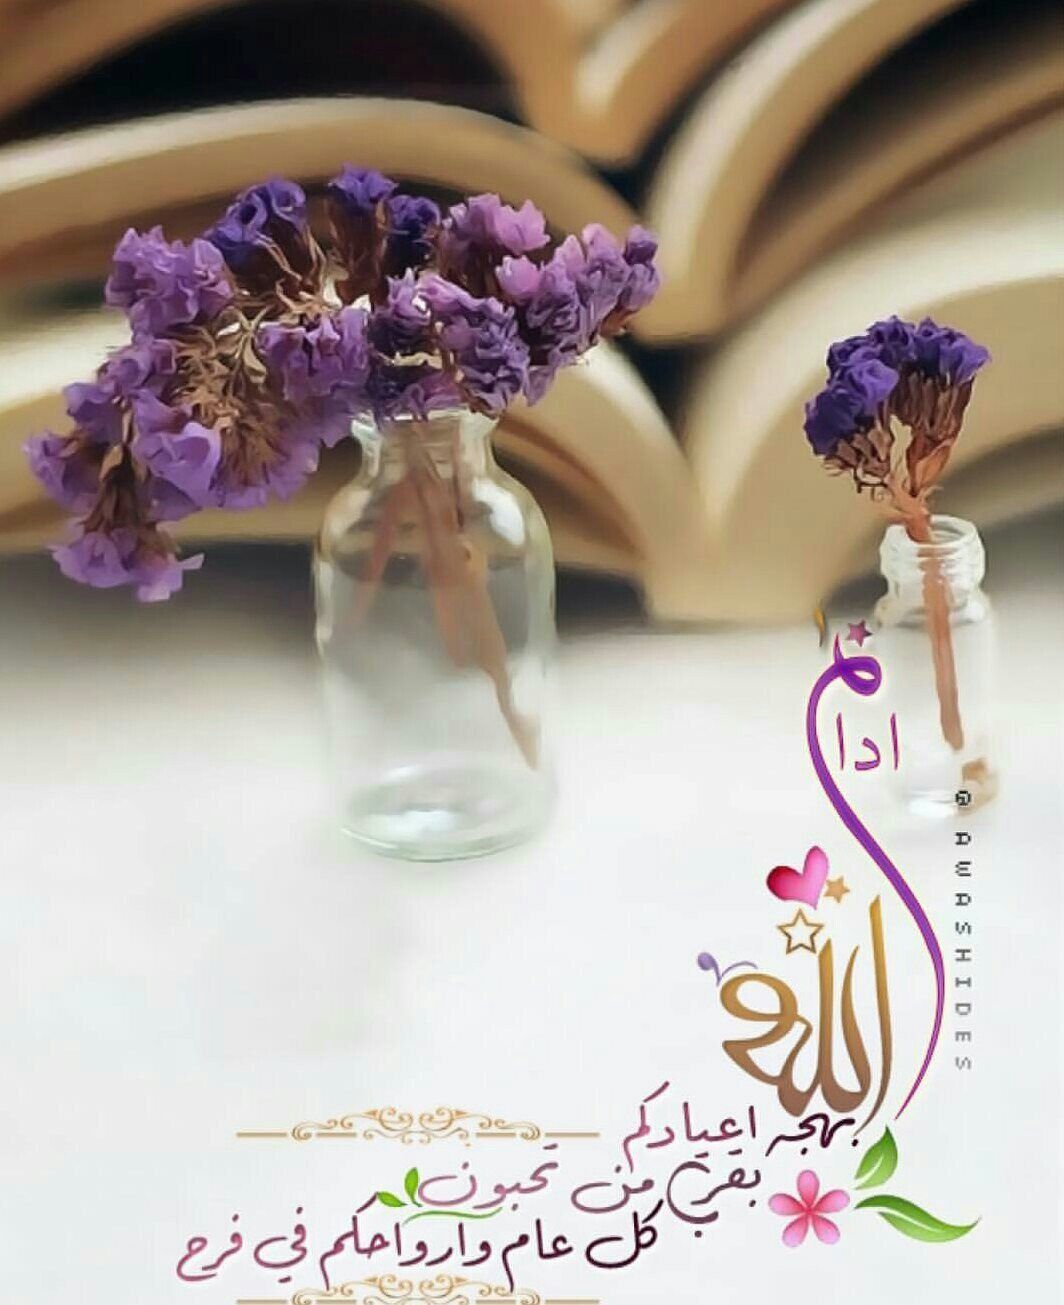 Eid Mubarak | أروع خلفيات وبطاقات معايدة عيد الفطر 2021 وأحدث عبارات وكلمات تهنئة العيد لكل الأصدقاء والأحباب - ثقفني